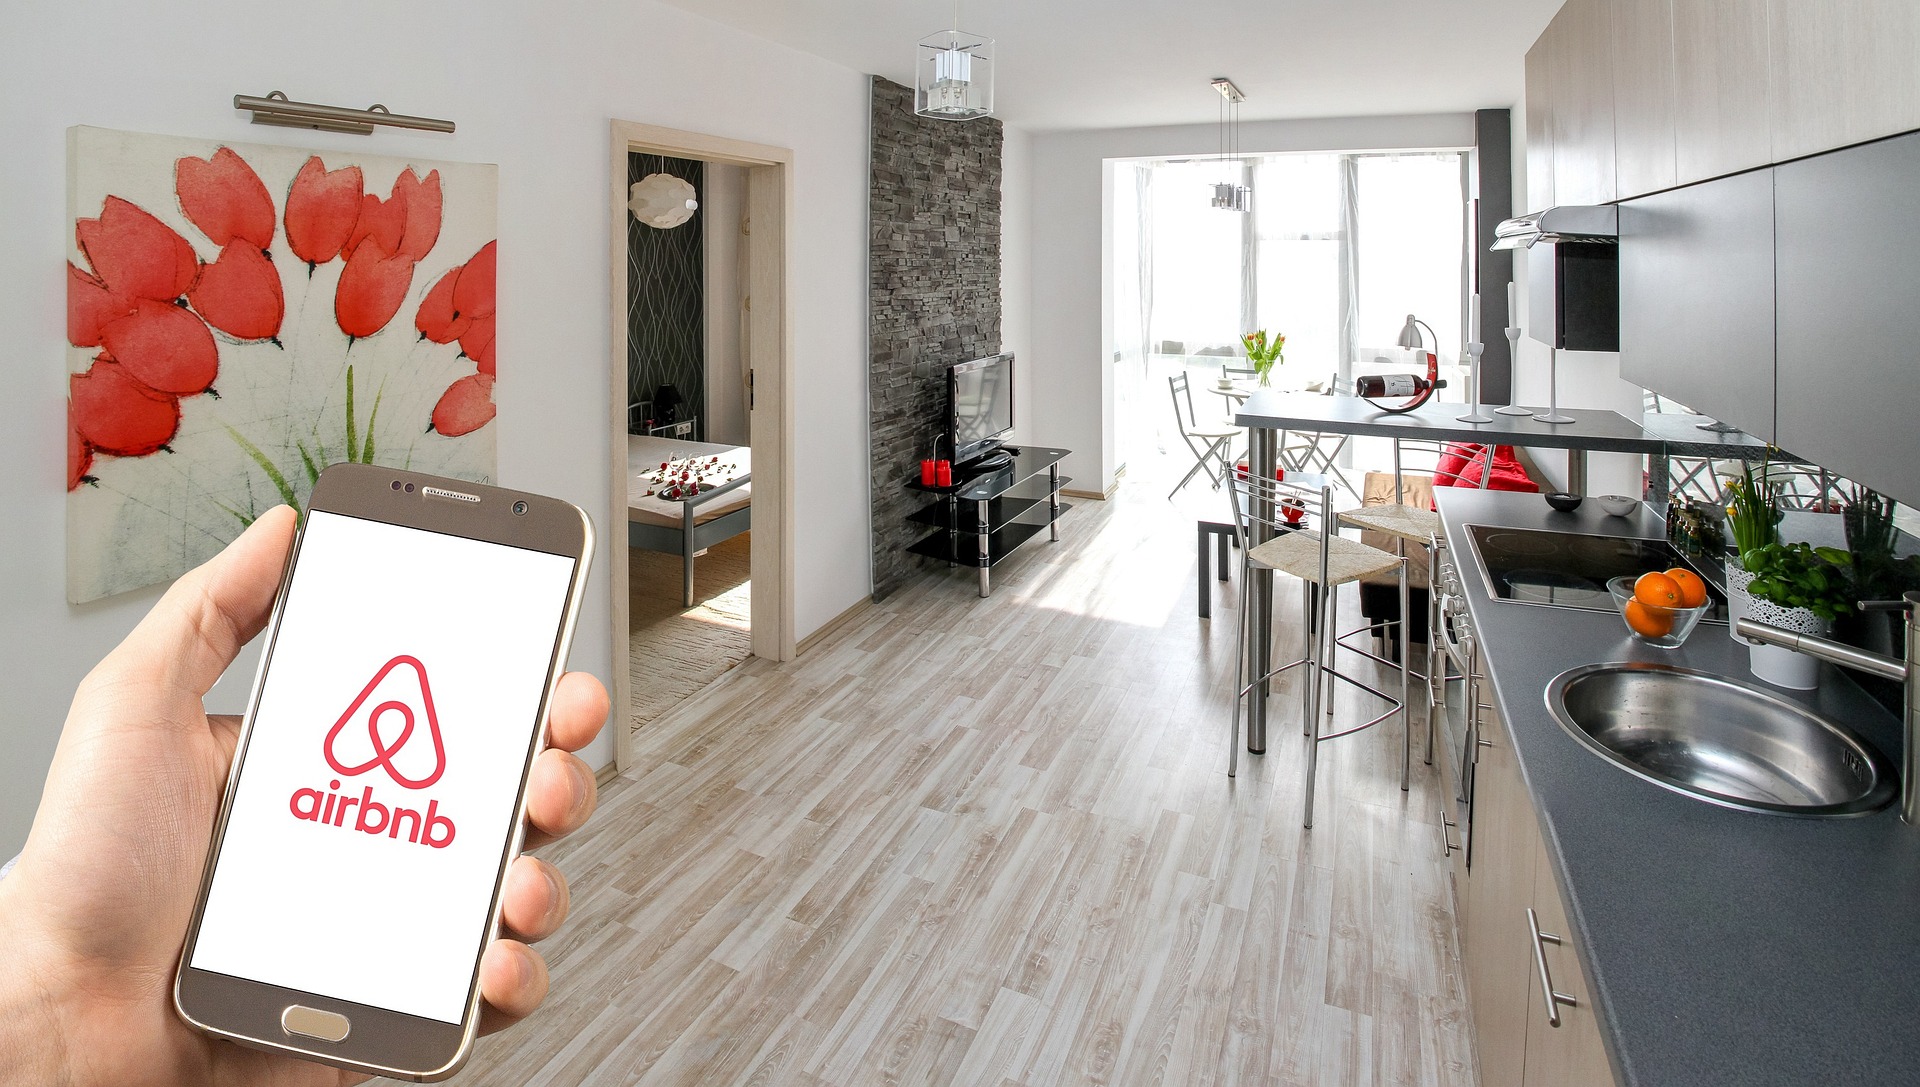 Airbnb app in kitchen